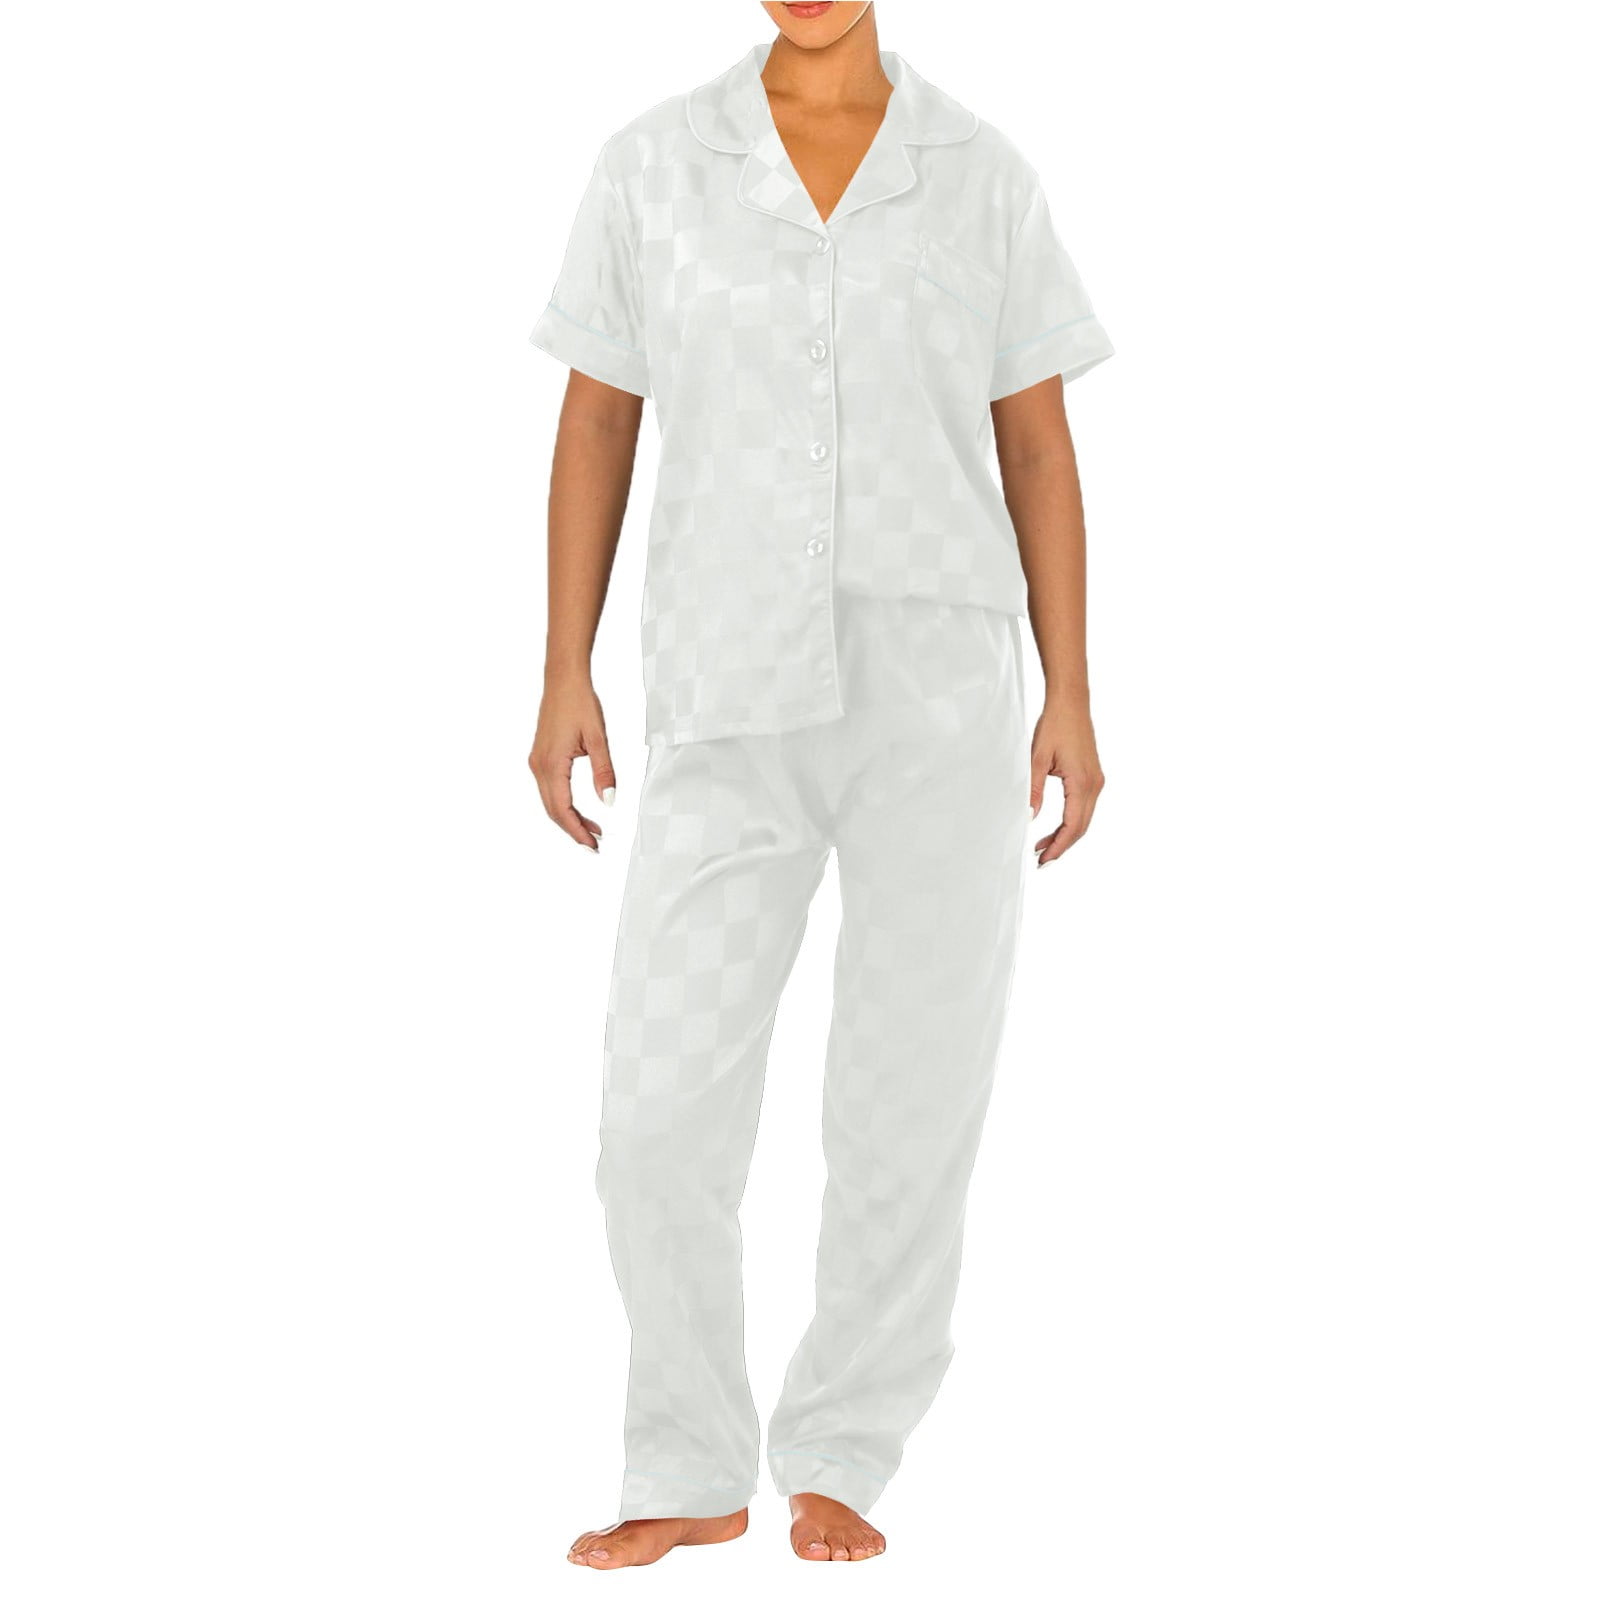 Riforla Secret Ice Silk Pajama Set Women's Pajamas Pajama Sets for ...